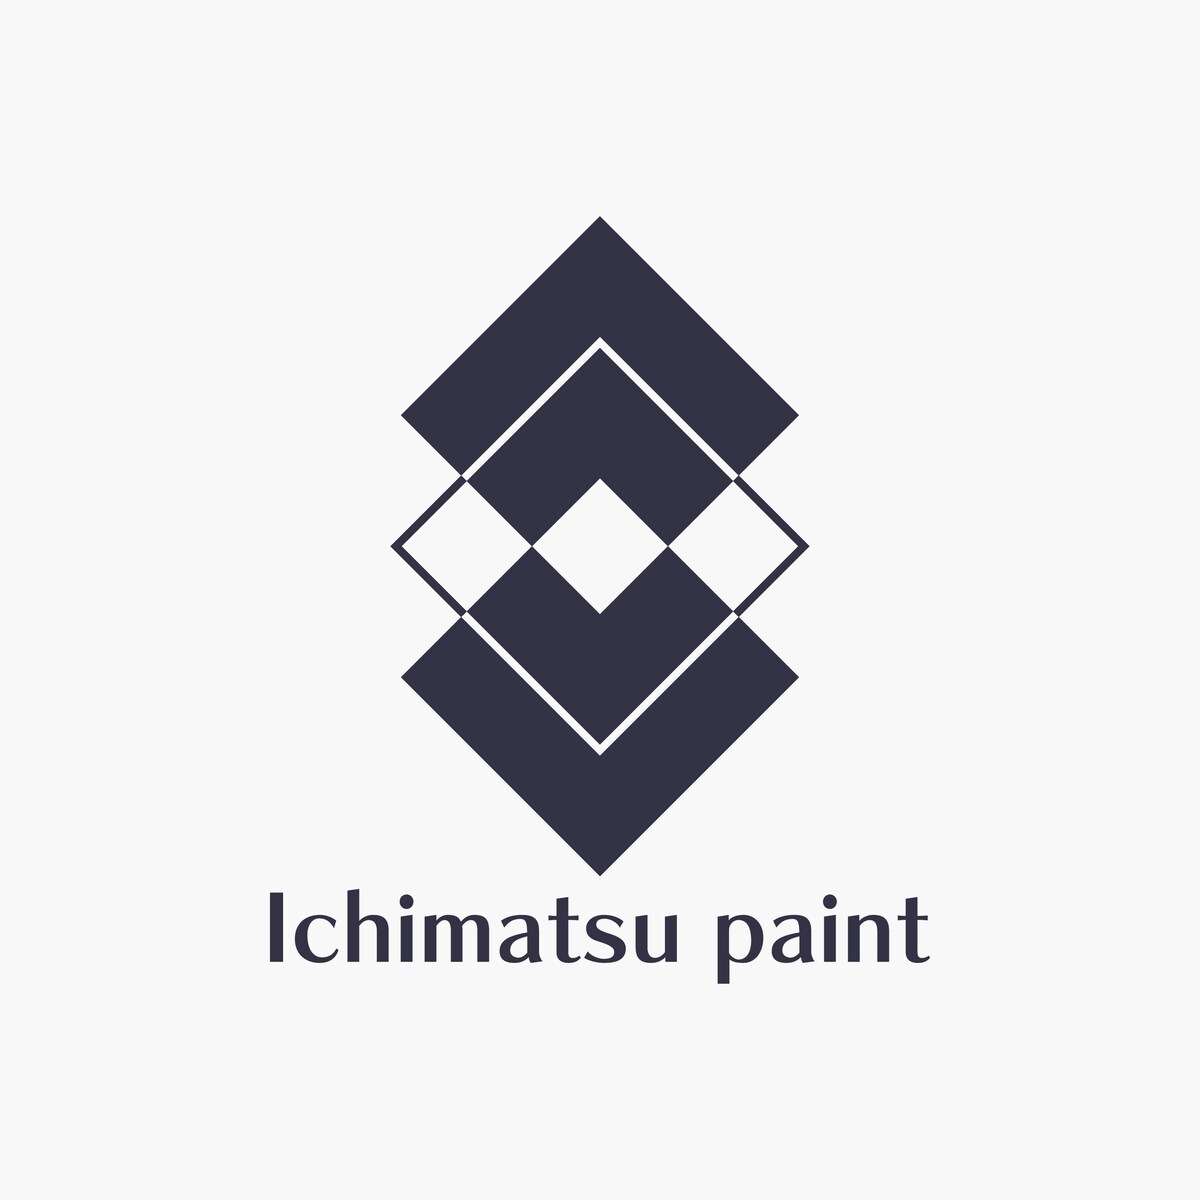 Ichimatu paint